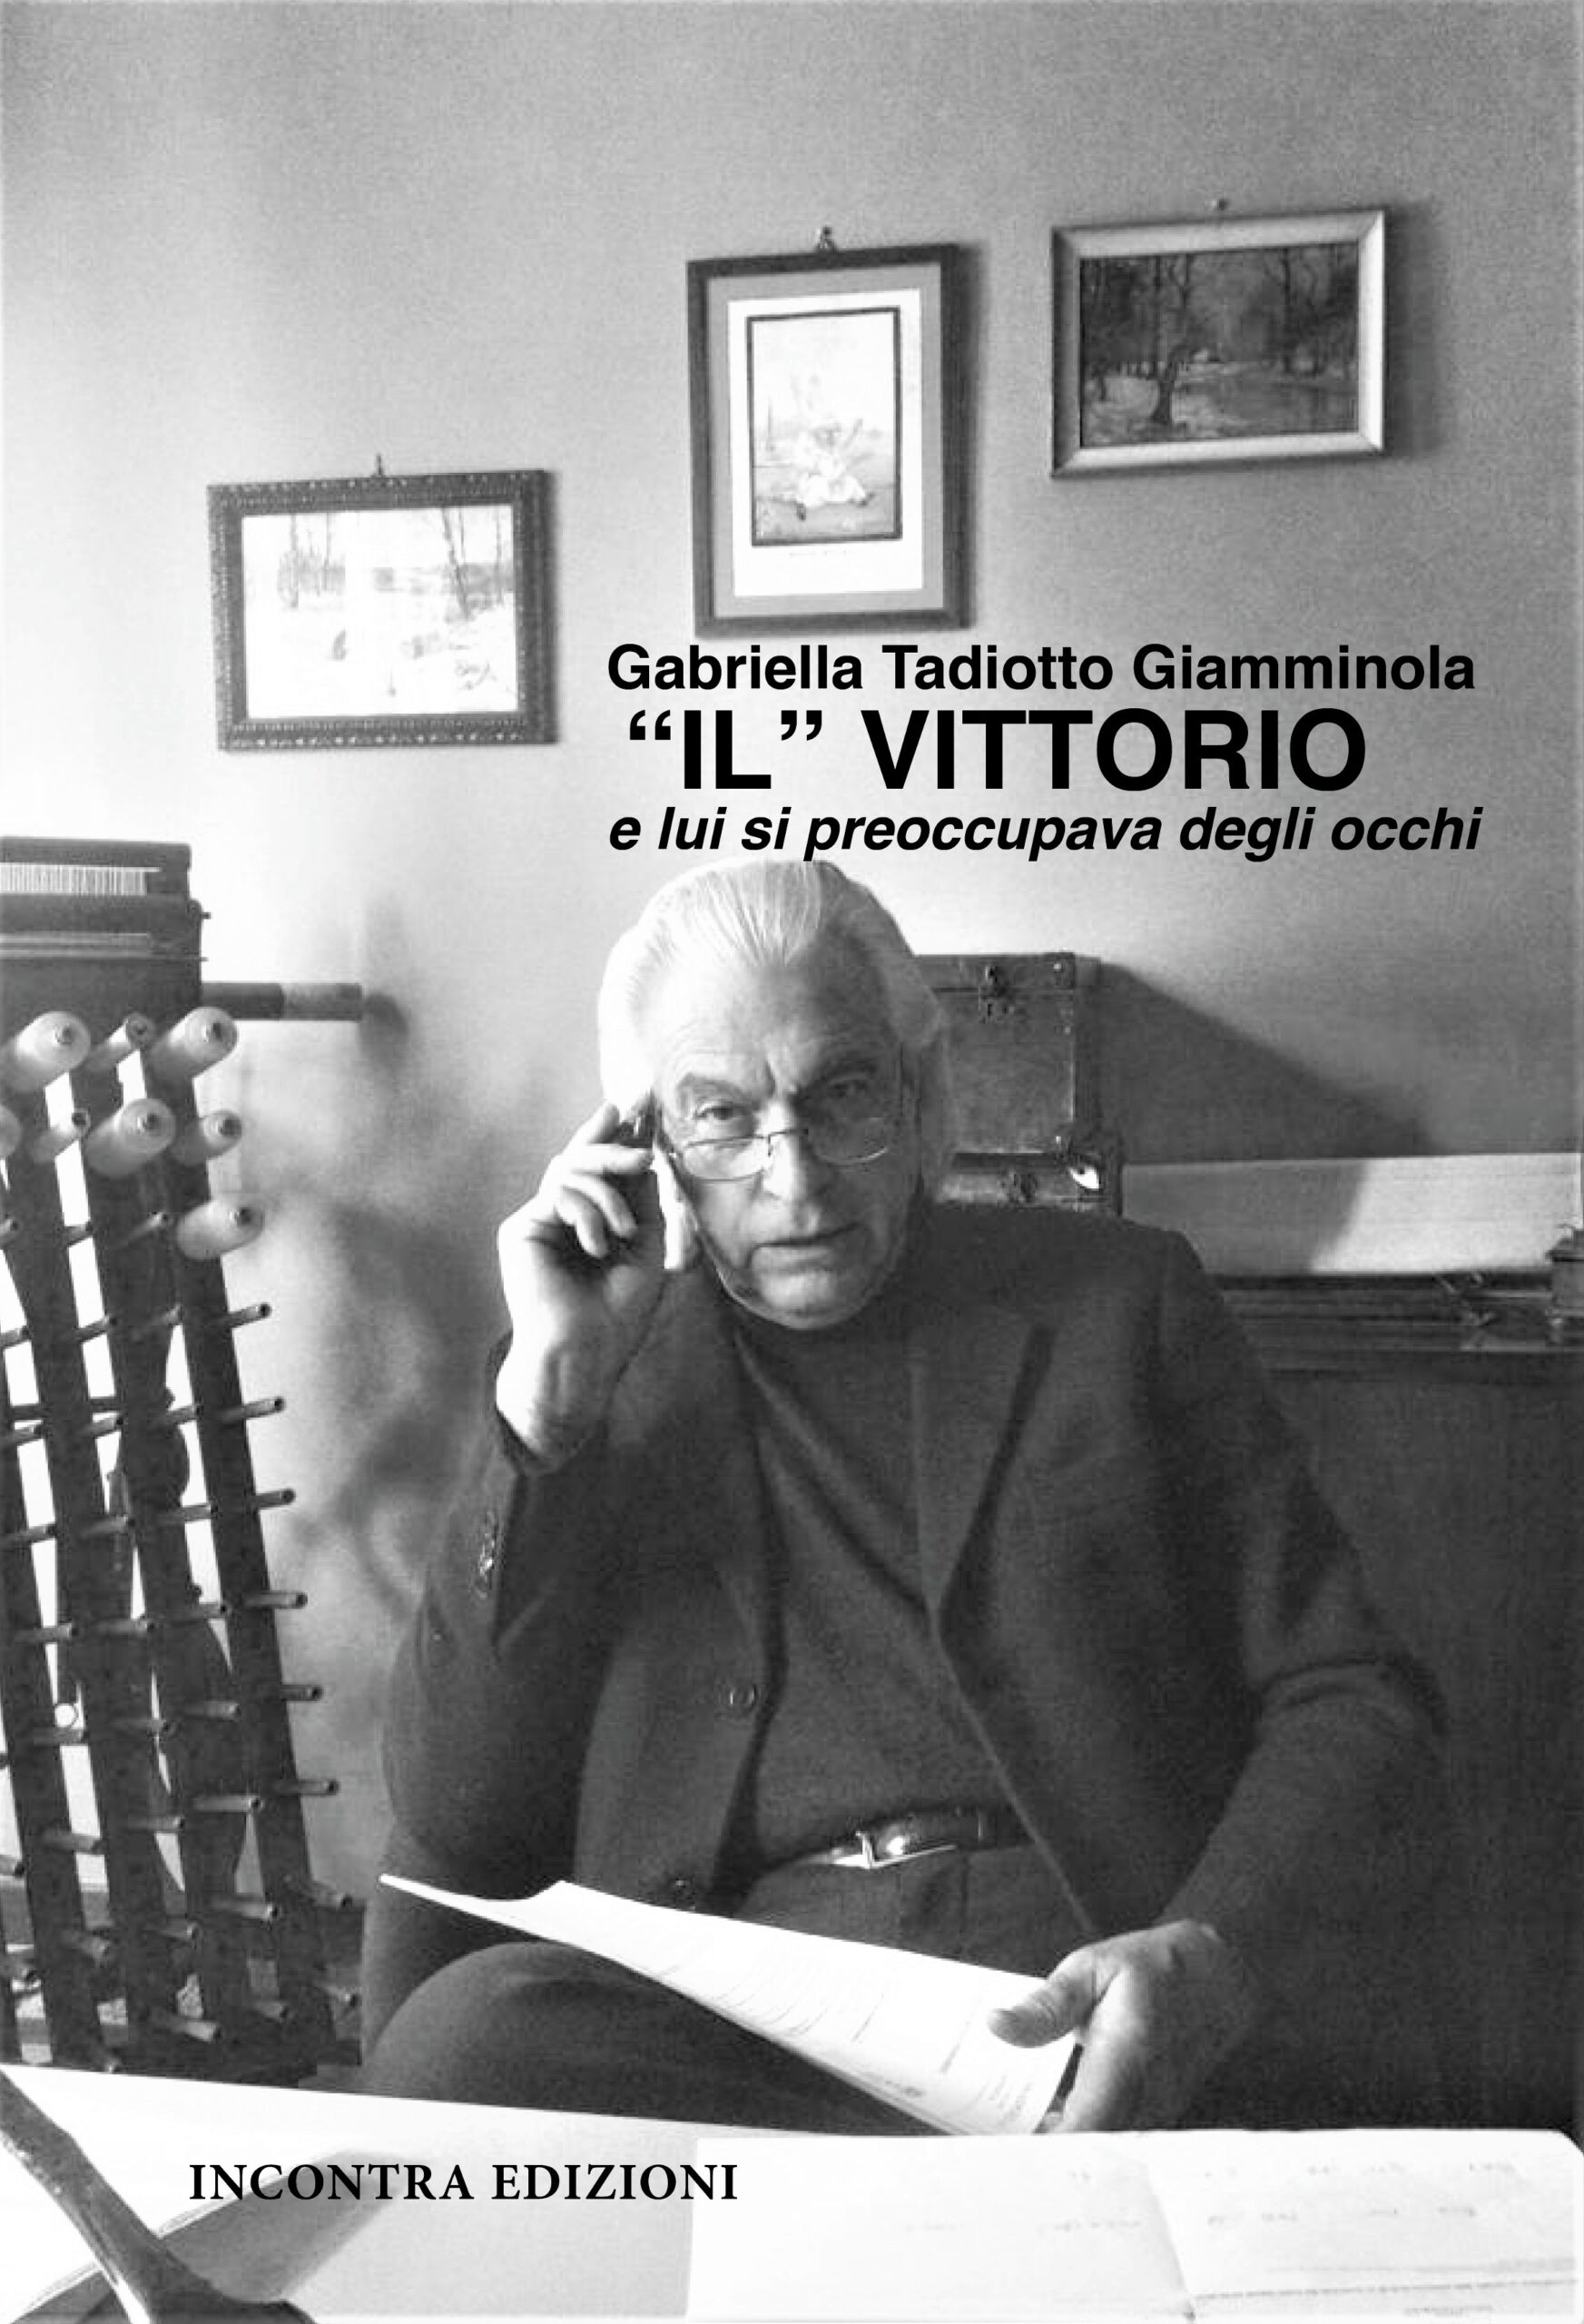 Gabriella Tadiotto Giamminola